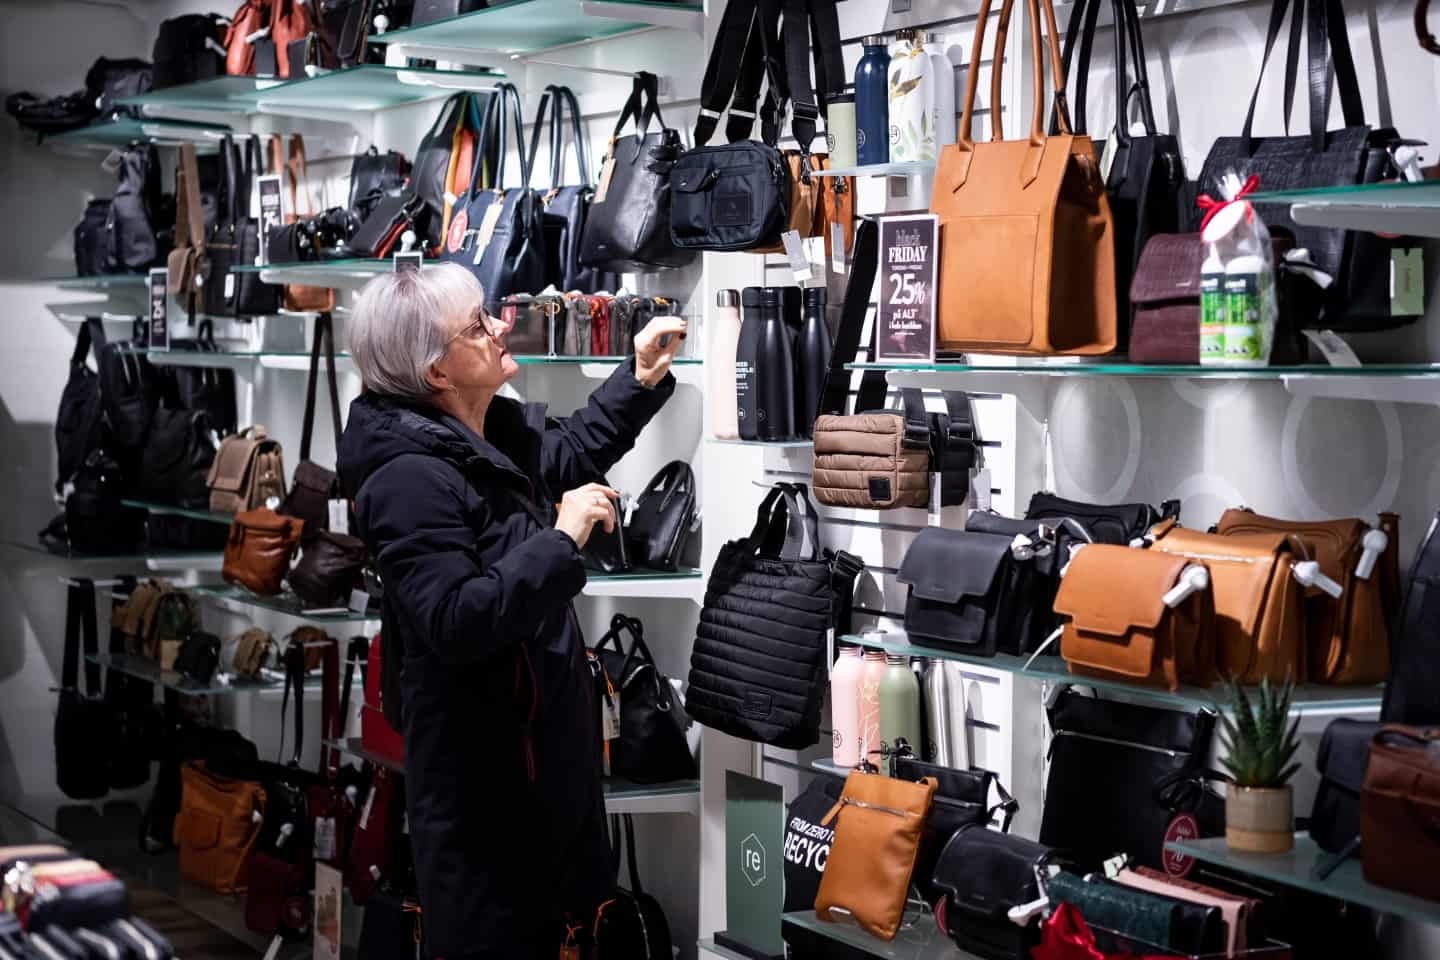 En taske-butik er kommet til byen: Neye åbnede med dobbelt black og masser af kunder | ugeavisen.dk